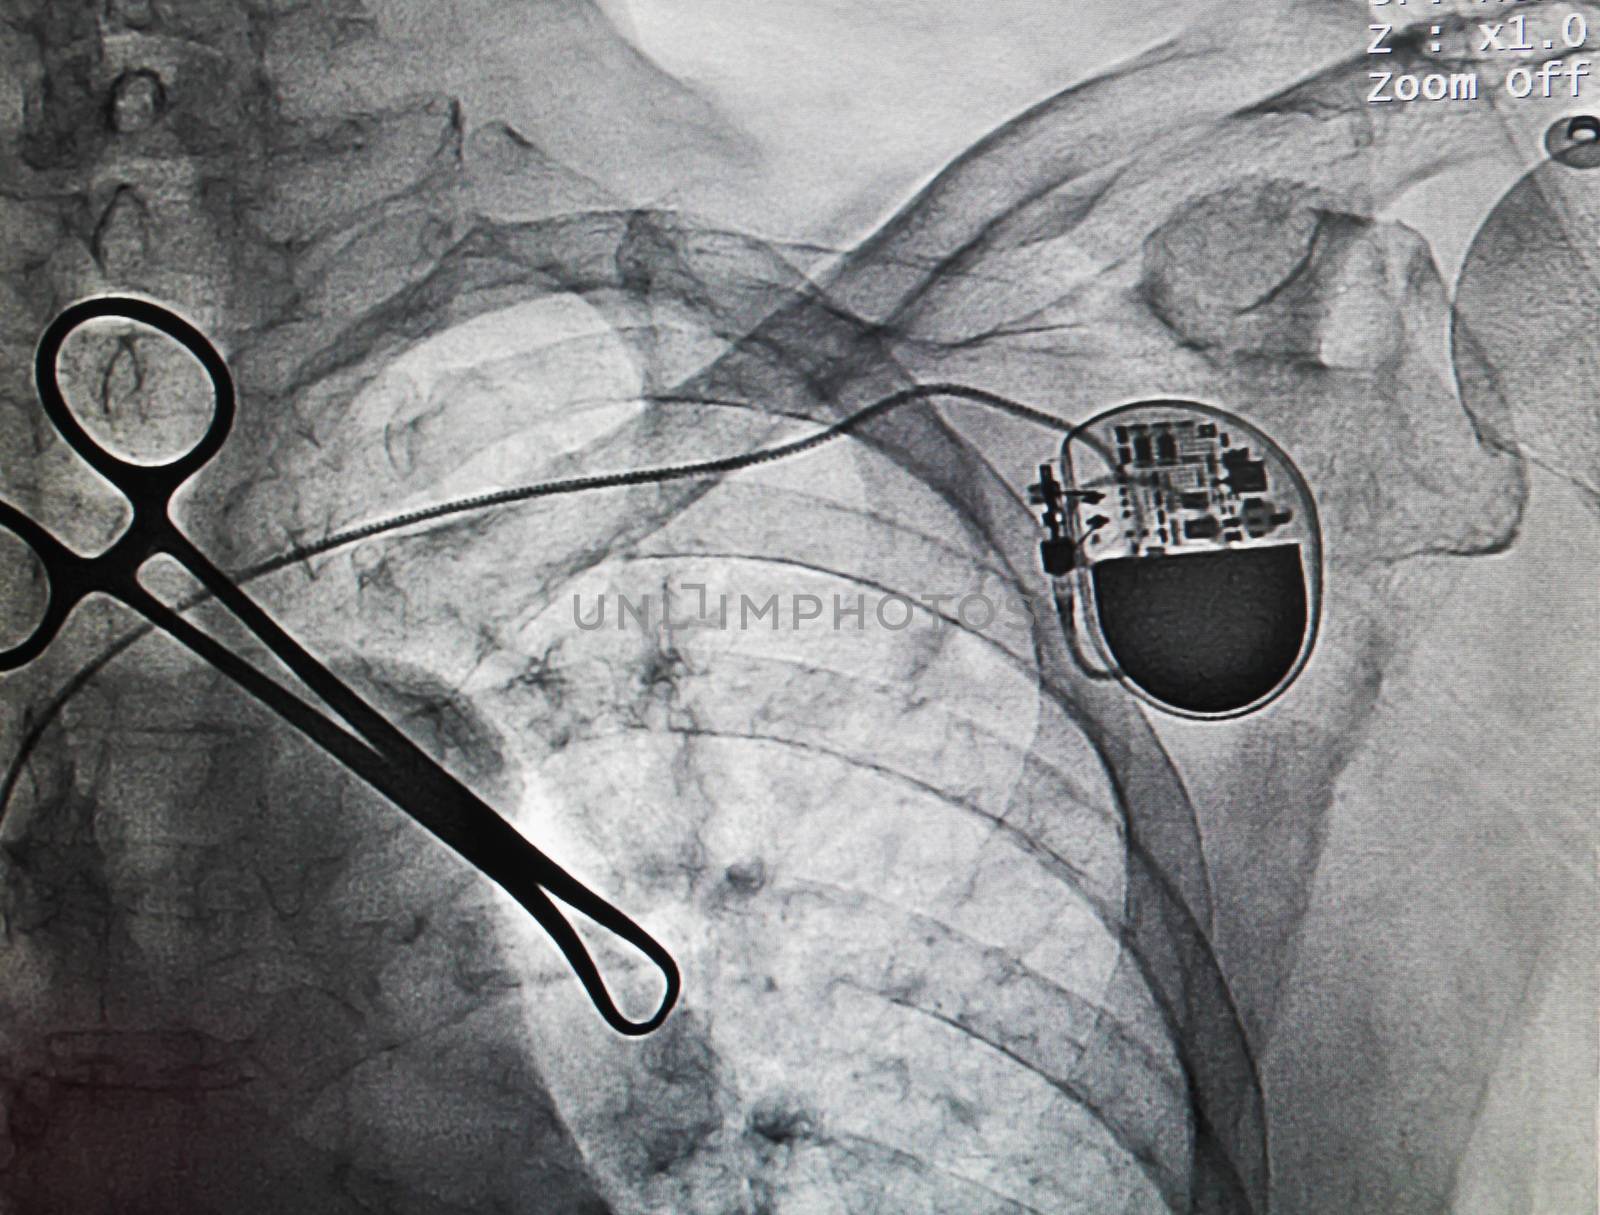 VVIR pacemaker by korawig